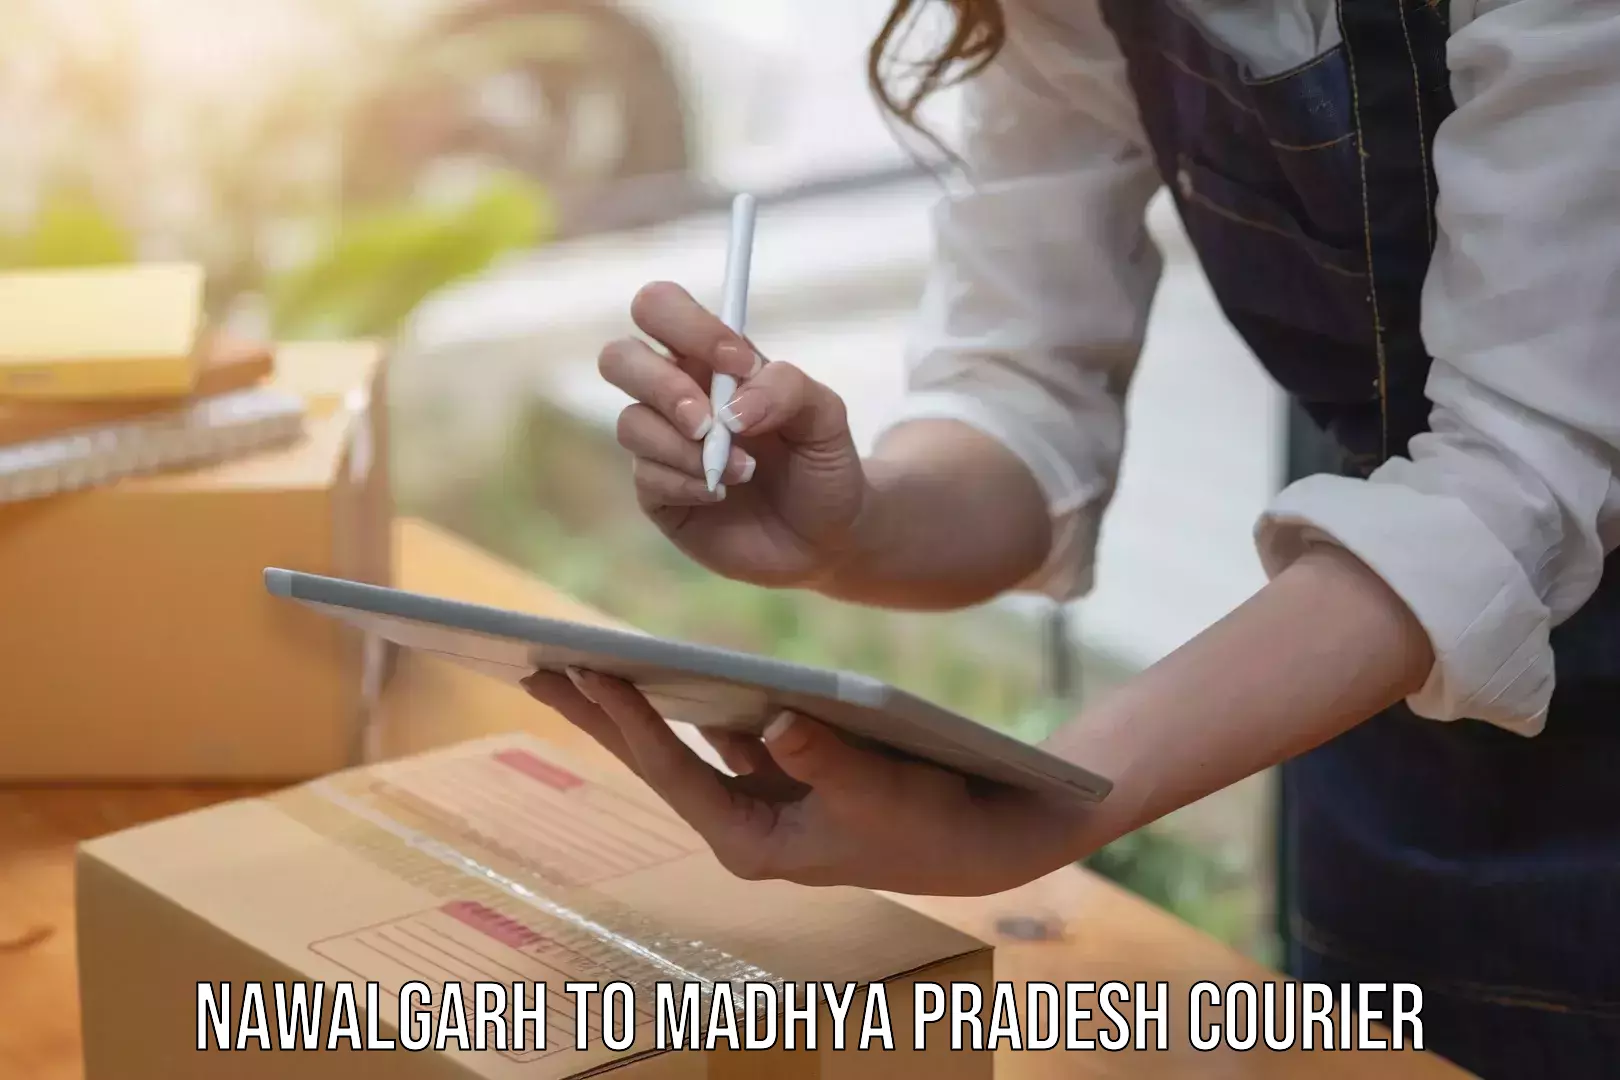 Multi-service courier options Nawalgarh to Pawai